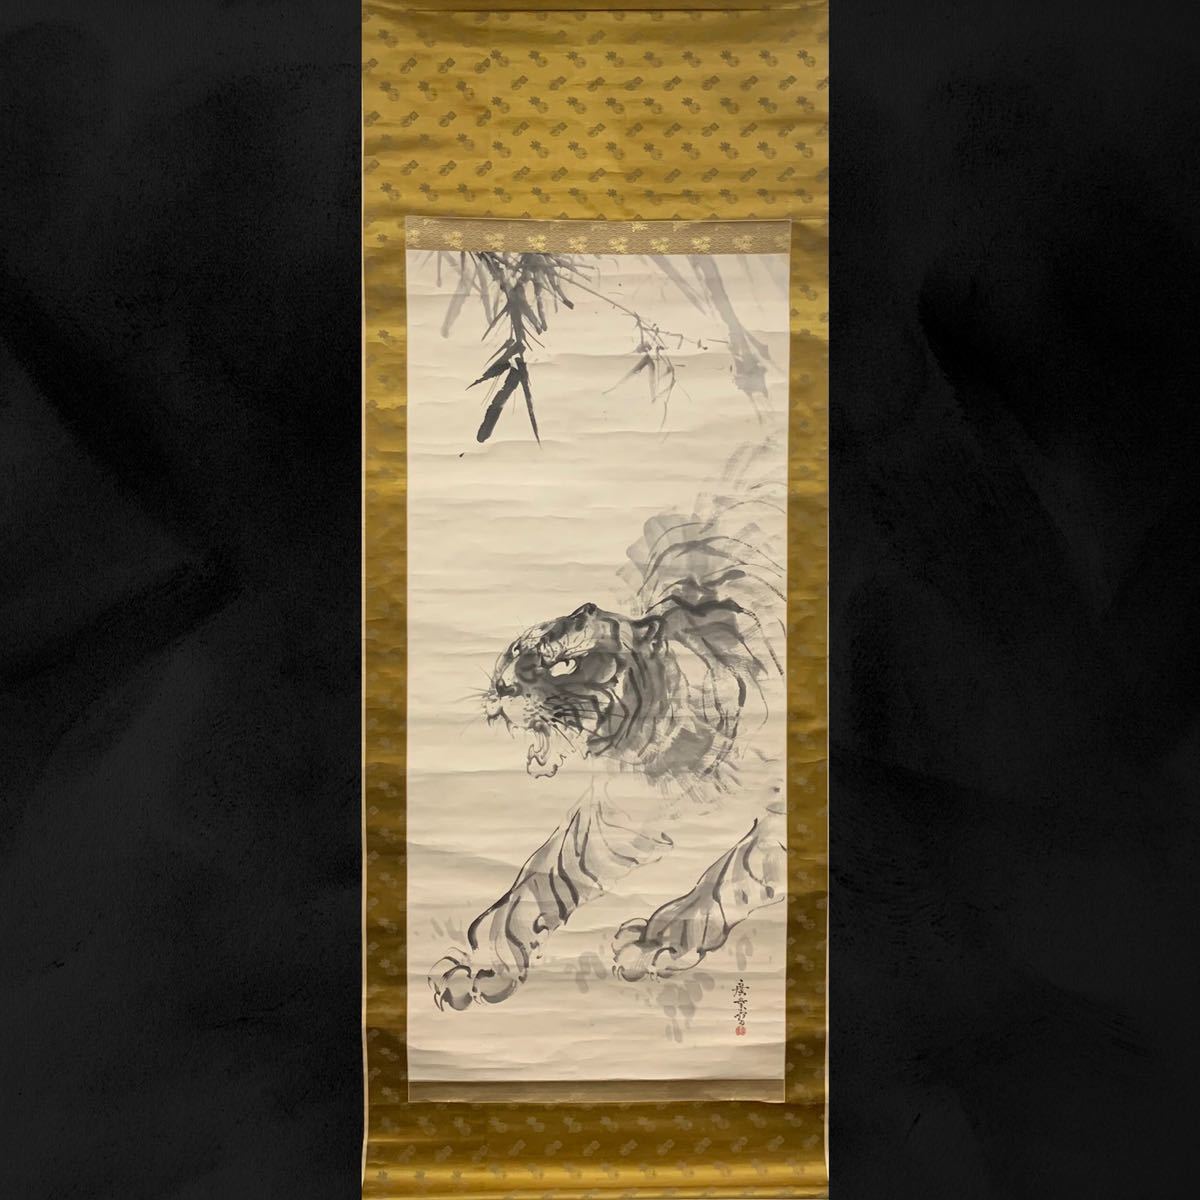 [Copie] (Refrain 06) Hiroyo Terasaki Tiger Peinture japonaise, parchemin suspendu, peinture à l'encre, période, même boîte, environ. 200 x 76 cm, peinture, Peinture japonaise, fleurs et oiseaux, oiseaux et bêtes